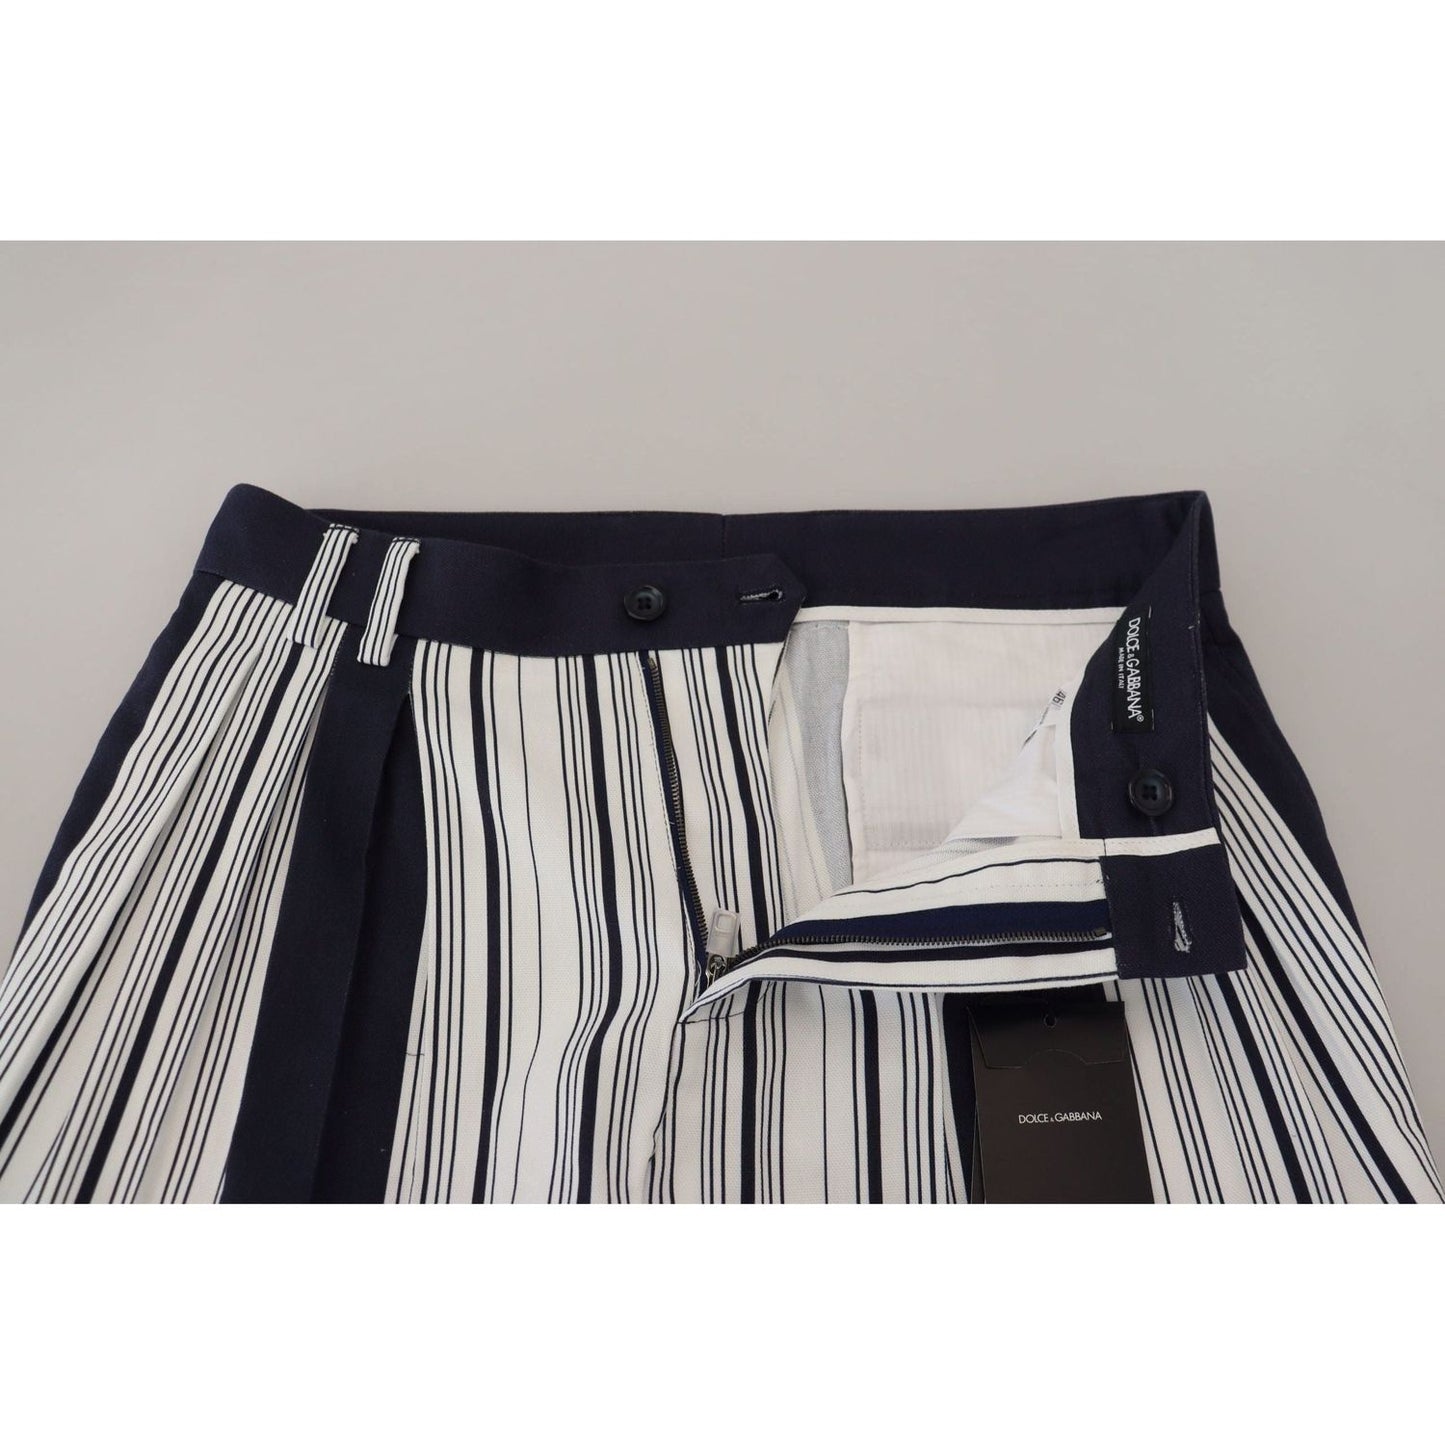 Dolce & Gabbana Elegant Striped Cotton Pants for Men white-cotton-striped-cropped-pants